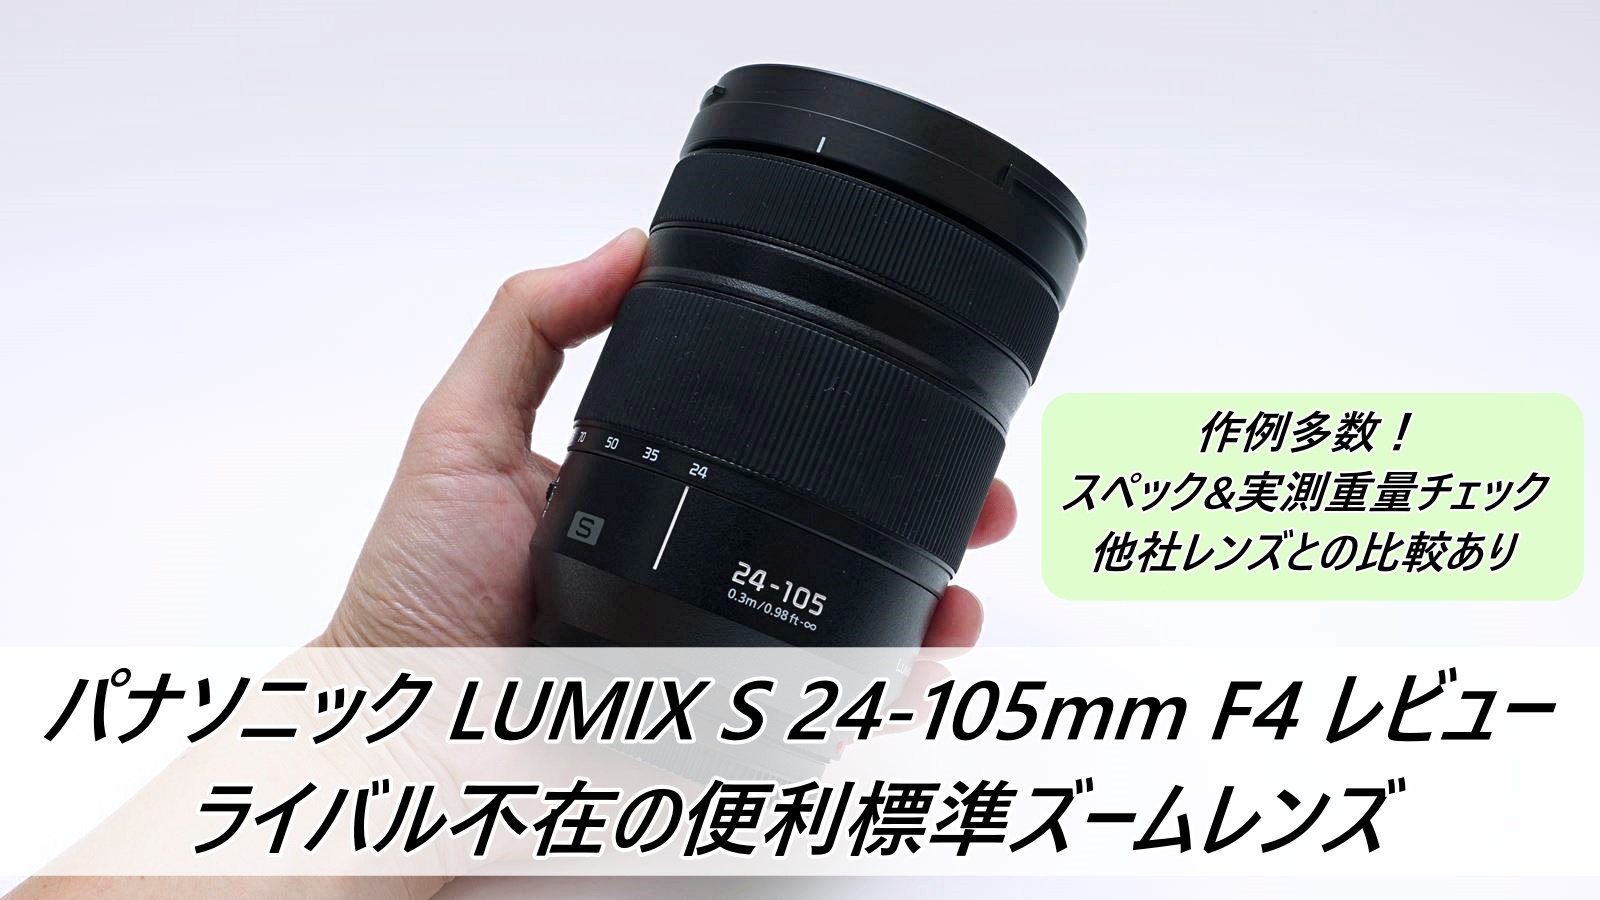 パナソニック LUMIX S 24-105mm F4 レビュー ライバル不在の標準ズーム 